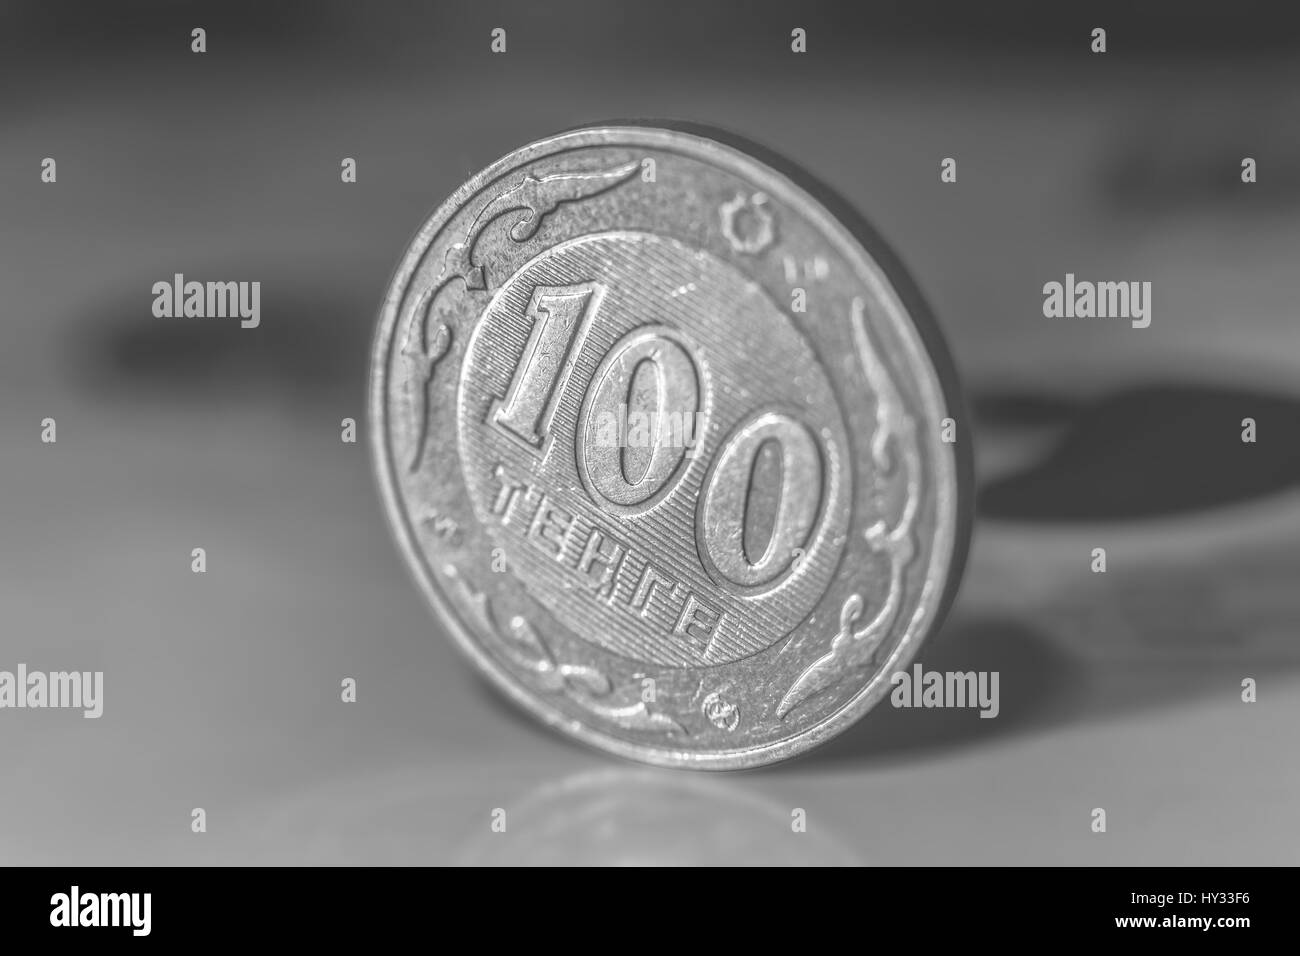 100 Tenge - Kasachstan Geld. Schwarz / weiß Foto. Stockfoto